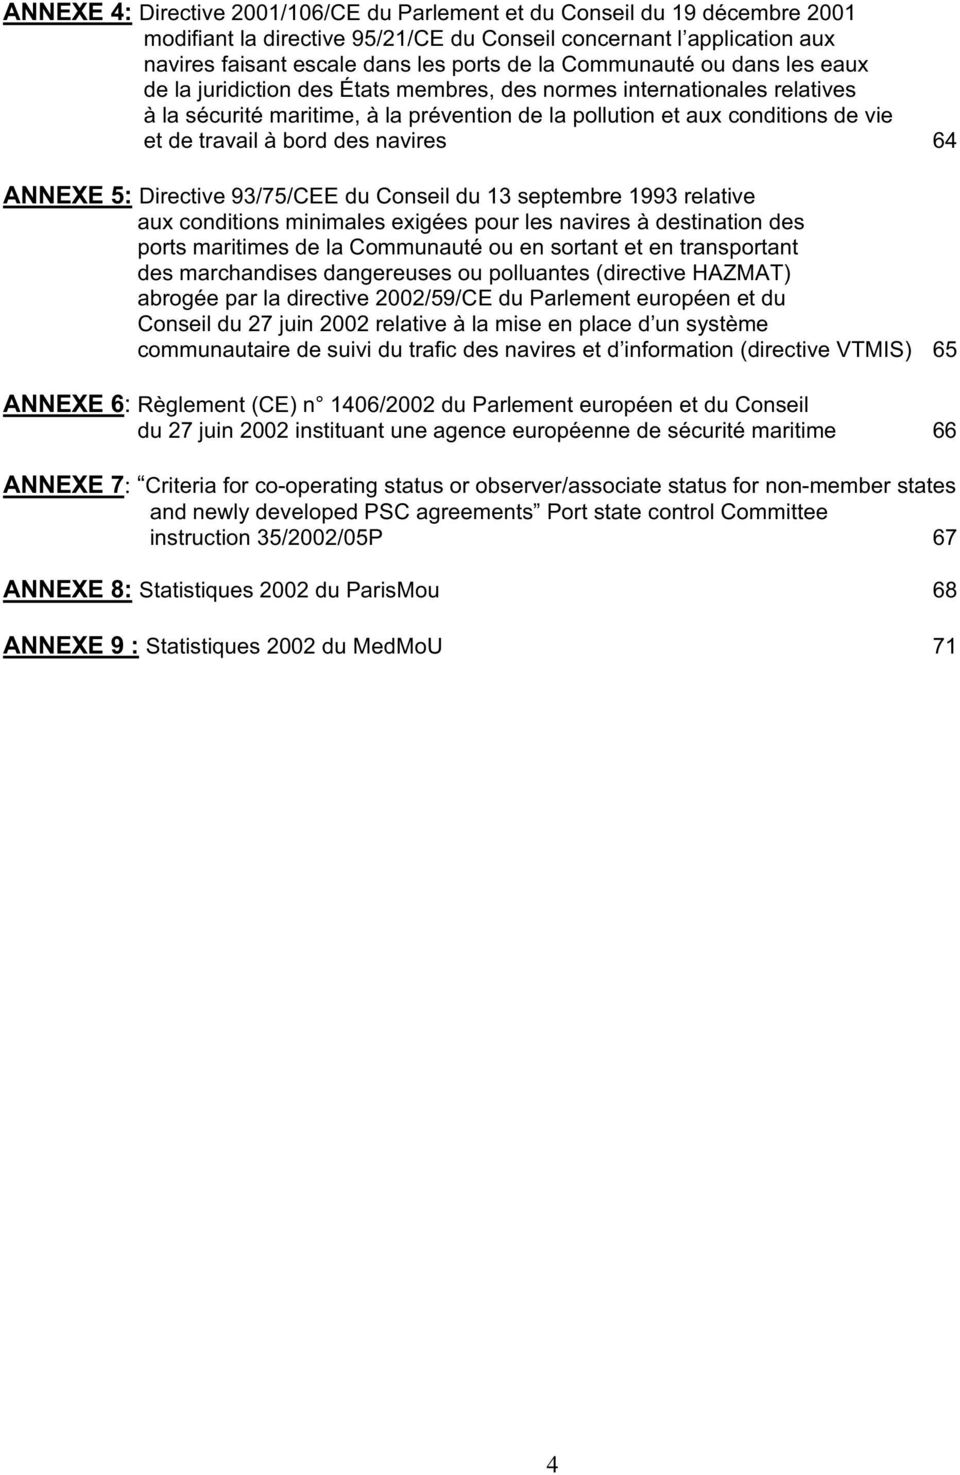 bord des navires 64 ANNEXE 5: Directive 93/75/CEE du Conseil du 13 septembre 1993 relative aux conditions minimales exigées pour les navires à destination des ports maritimes de la Communauté ou en